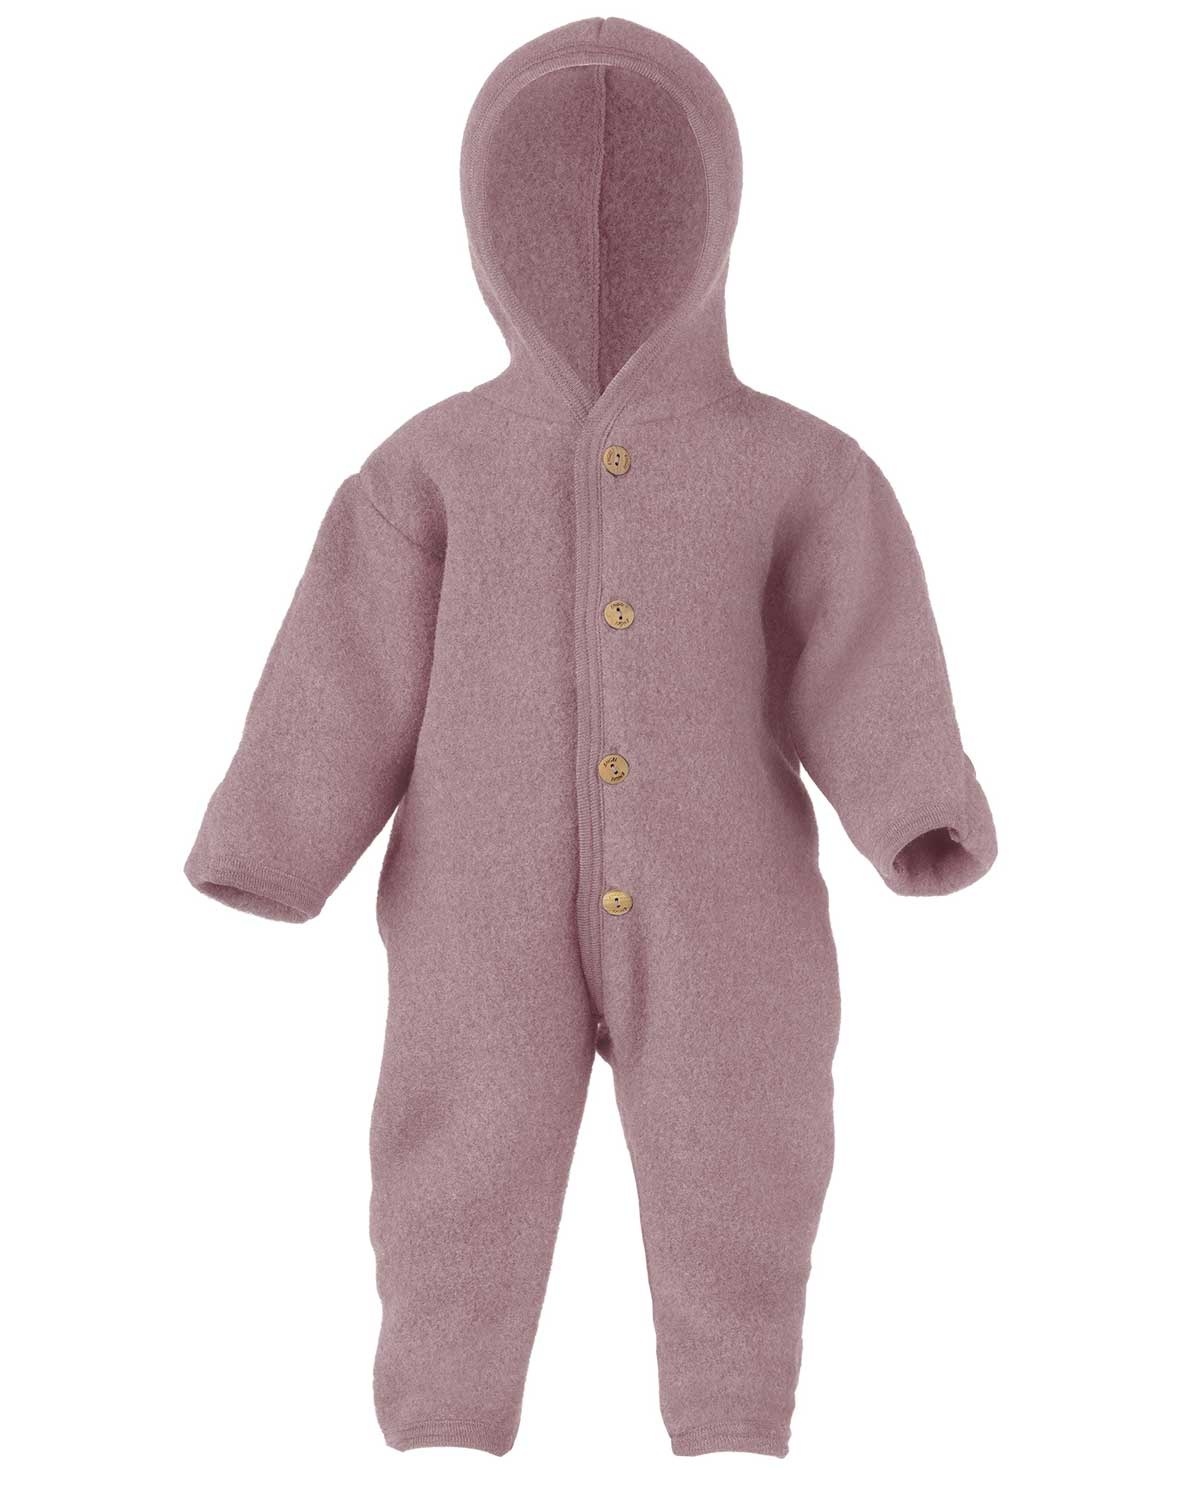 ENGEL 100% Merino Wool Baby Beige Pajamas Romper Overall 